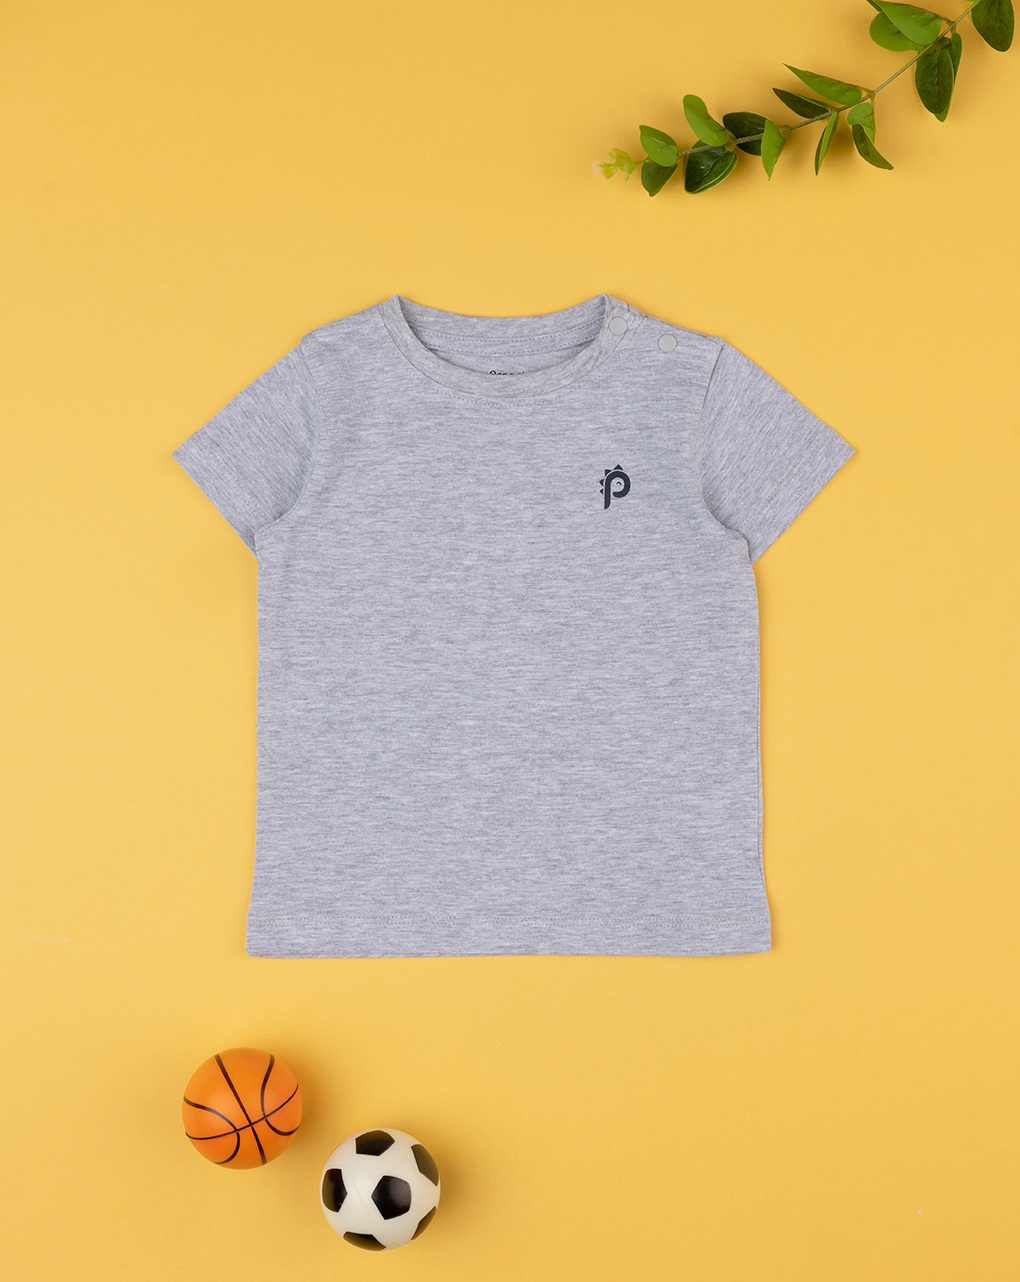 βρεφικό t-shirt γκρι p για αγόρι - Prénatal